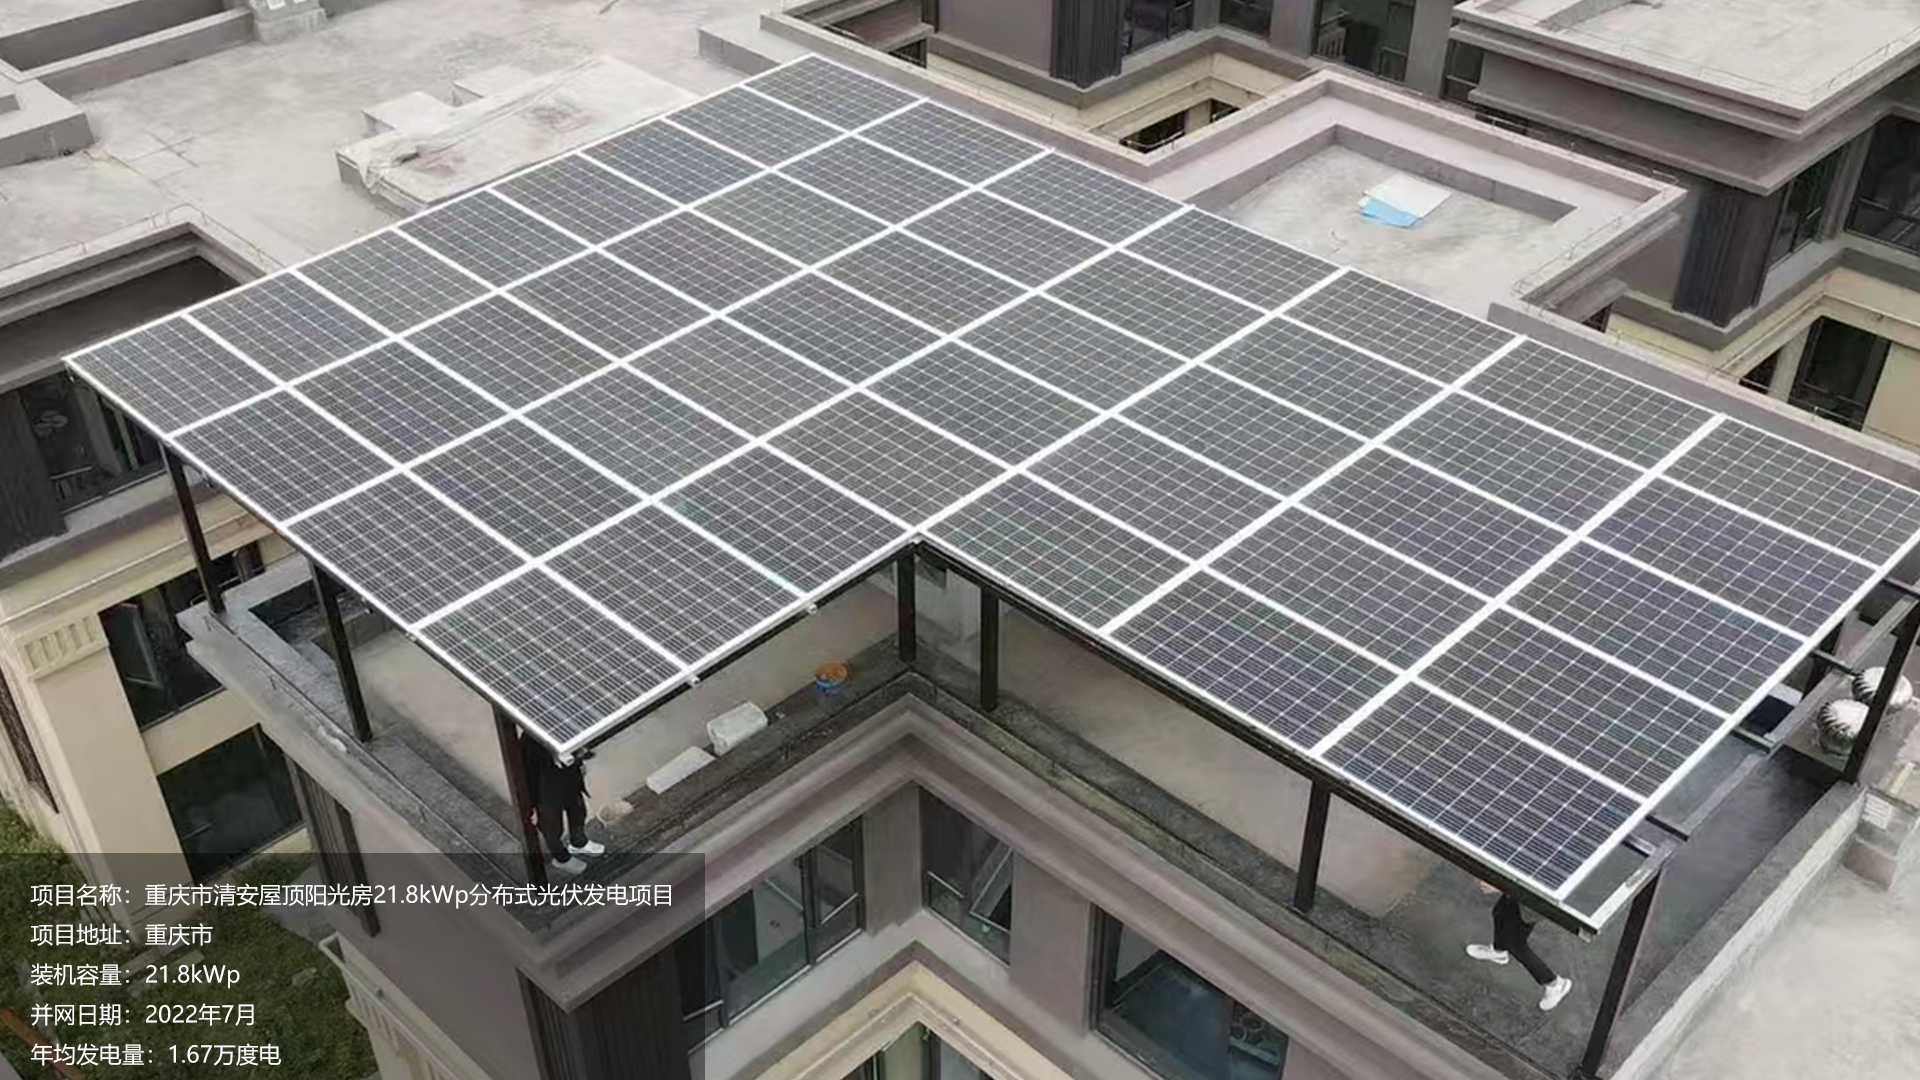 清安屋顶阳光房项目总装机容量21.8KW，项目位于重庆市，于2022年7月并网发电，年均发电量约2万度。			